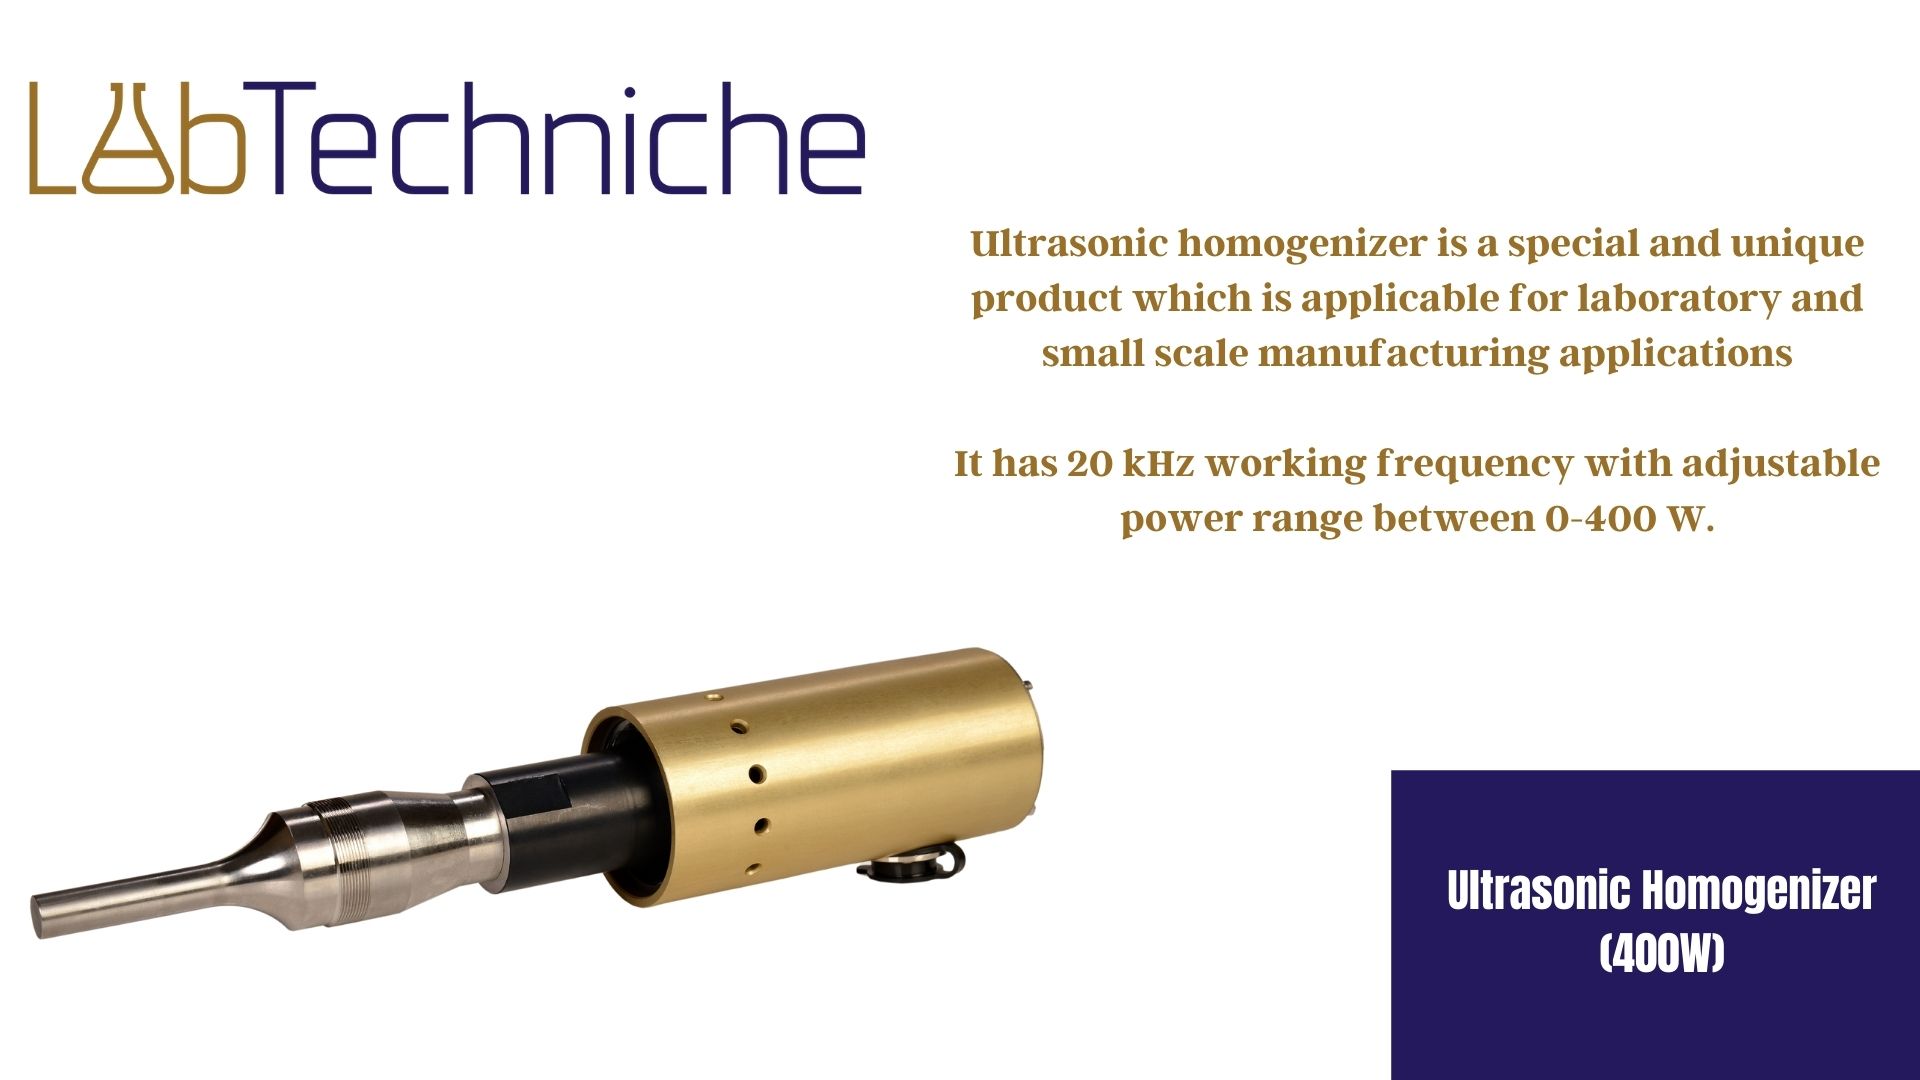 Ultrasonic Homogenizer (400W)